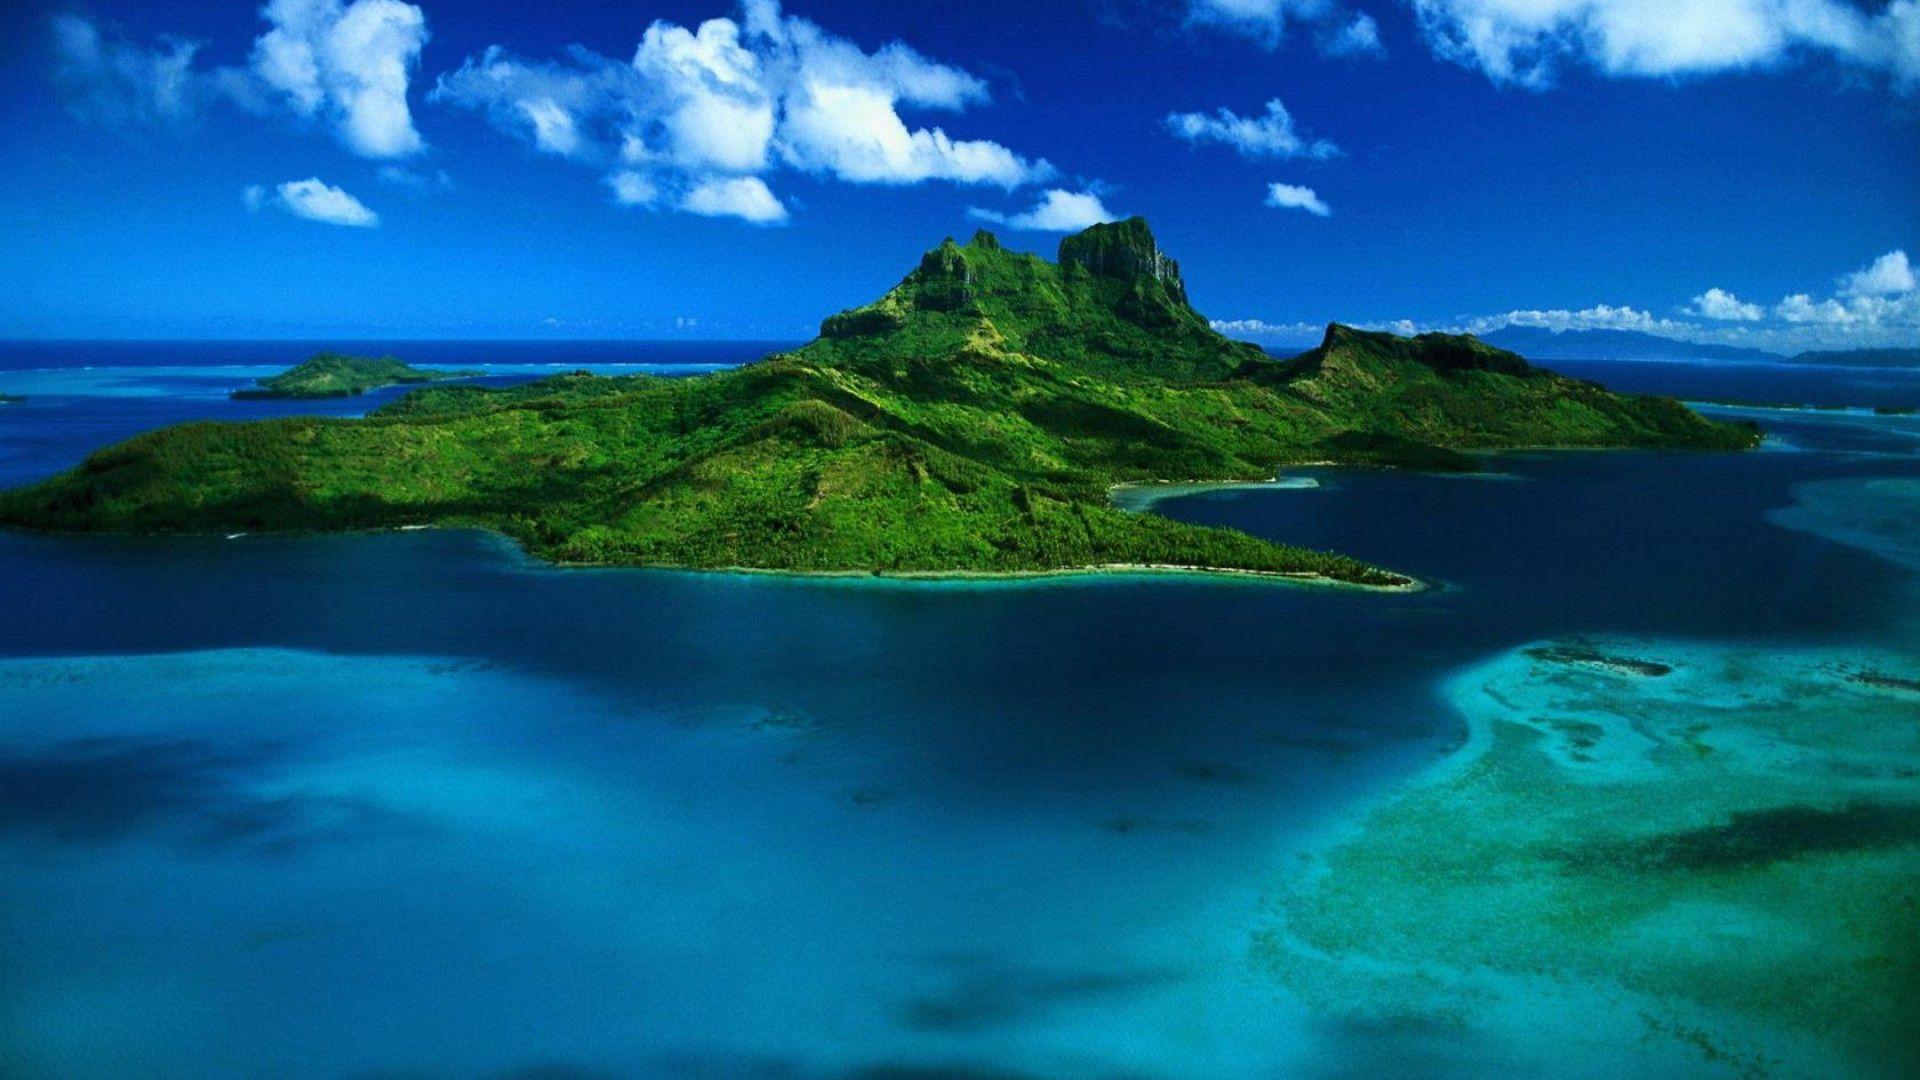 HD wallpaper Bora Bora Island Of Paradise In French Polynesia Landscape  Nature Sea Wallpaper Hd 19201200  Wallpaper Flare